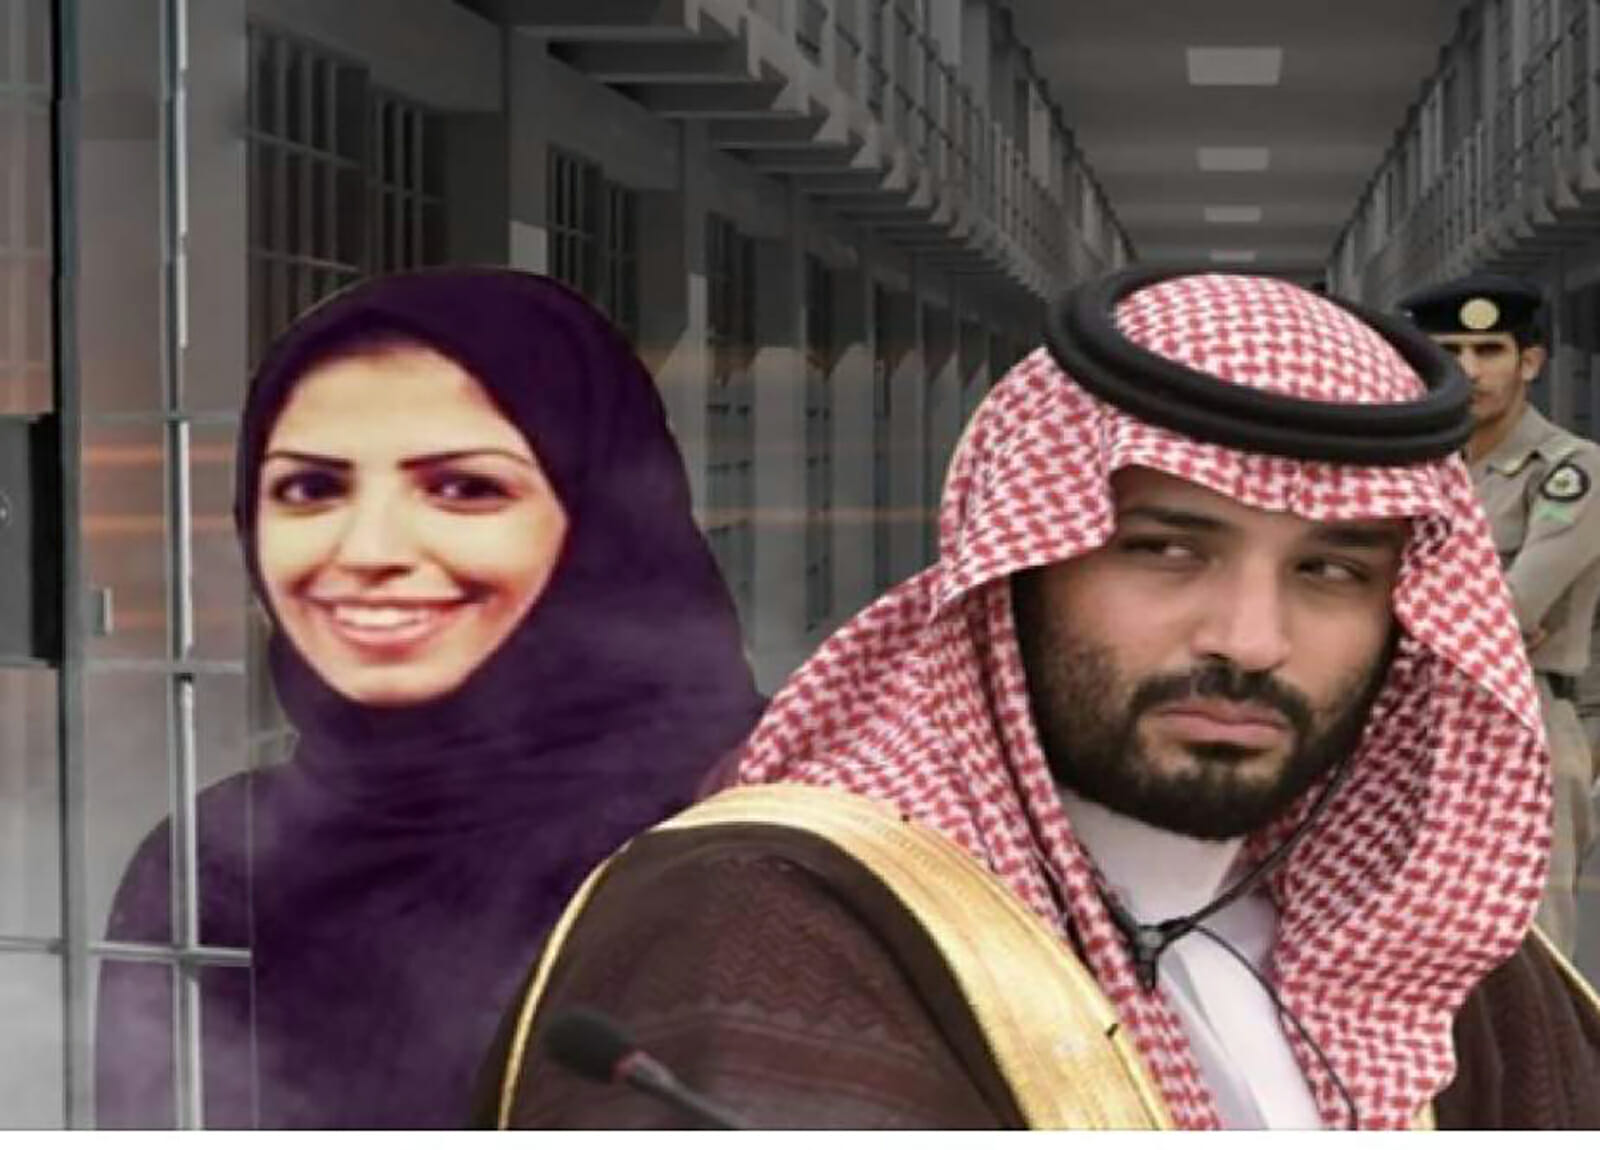 52 امرأة على الأقل في معتقلات السعودية بأحكام وصل بعضها لـ90 سنة سجن